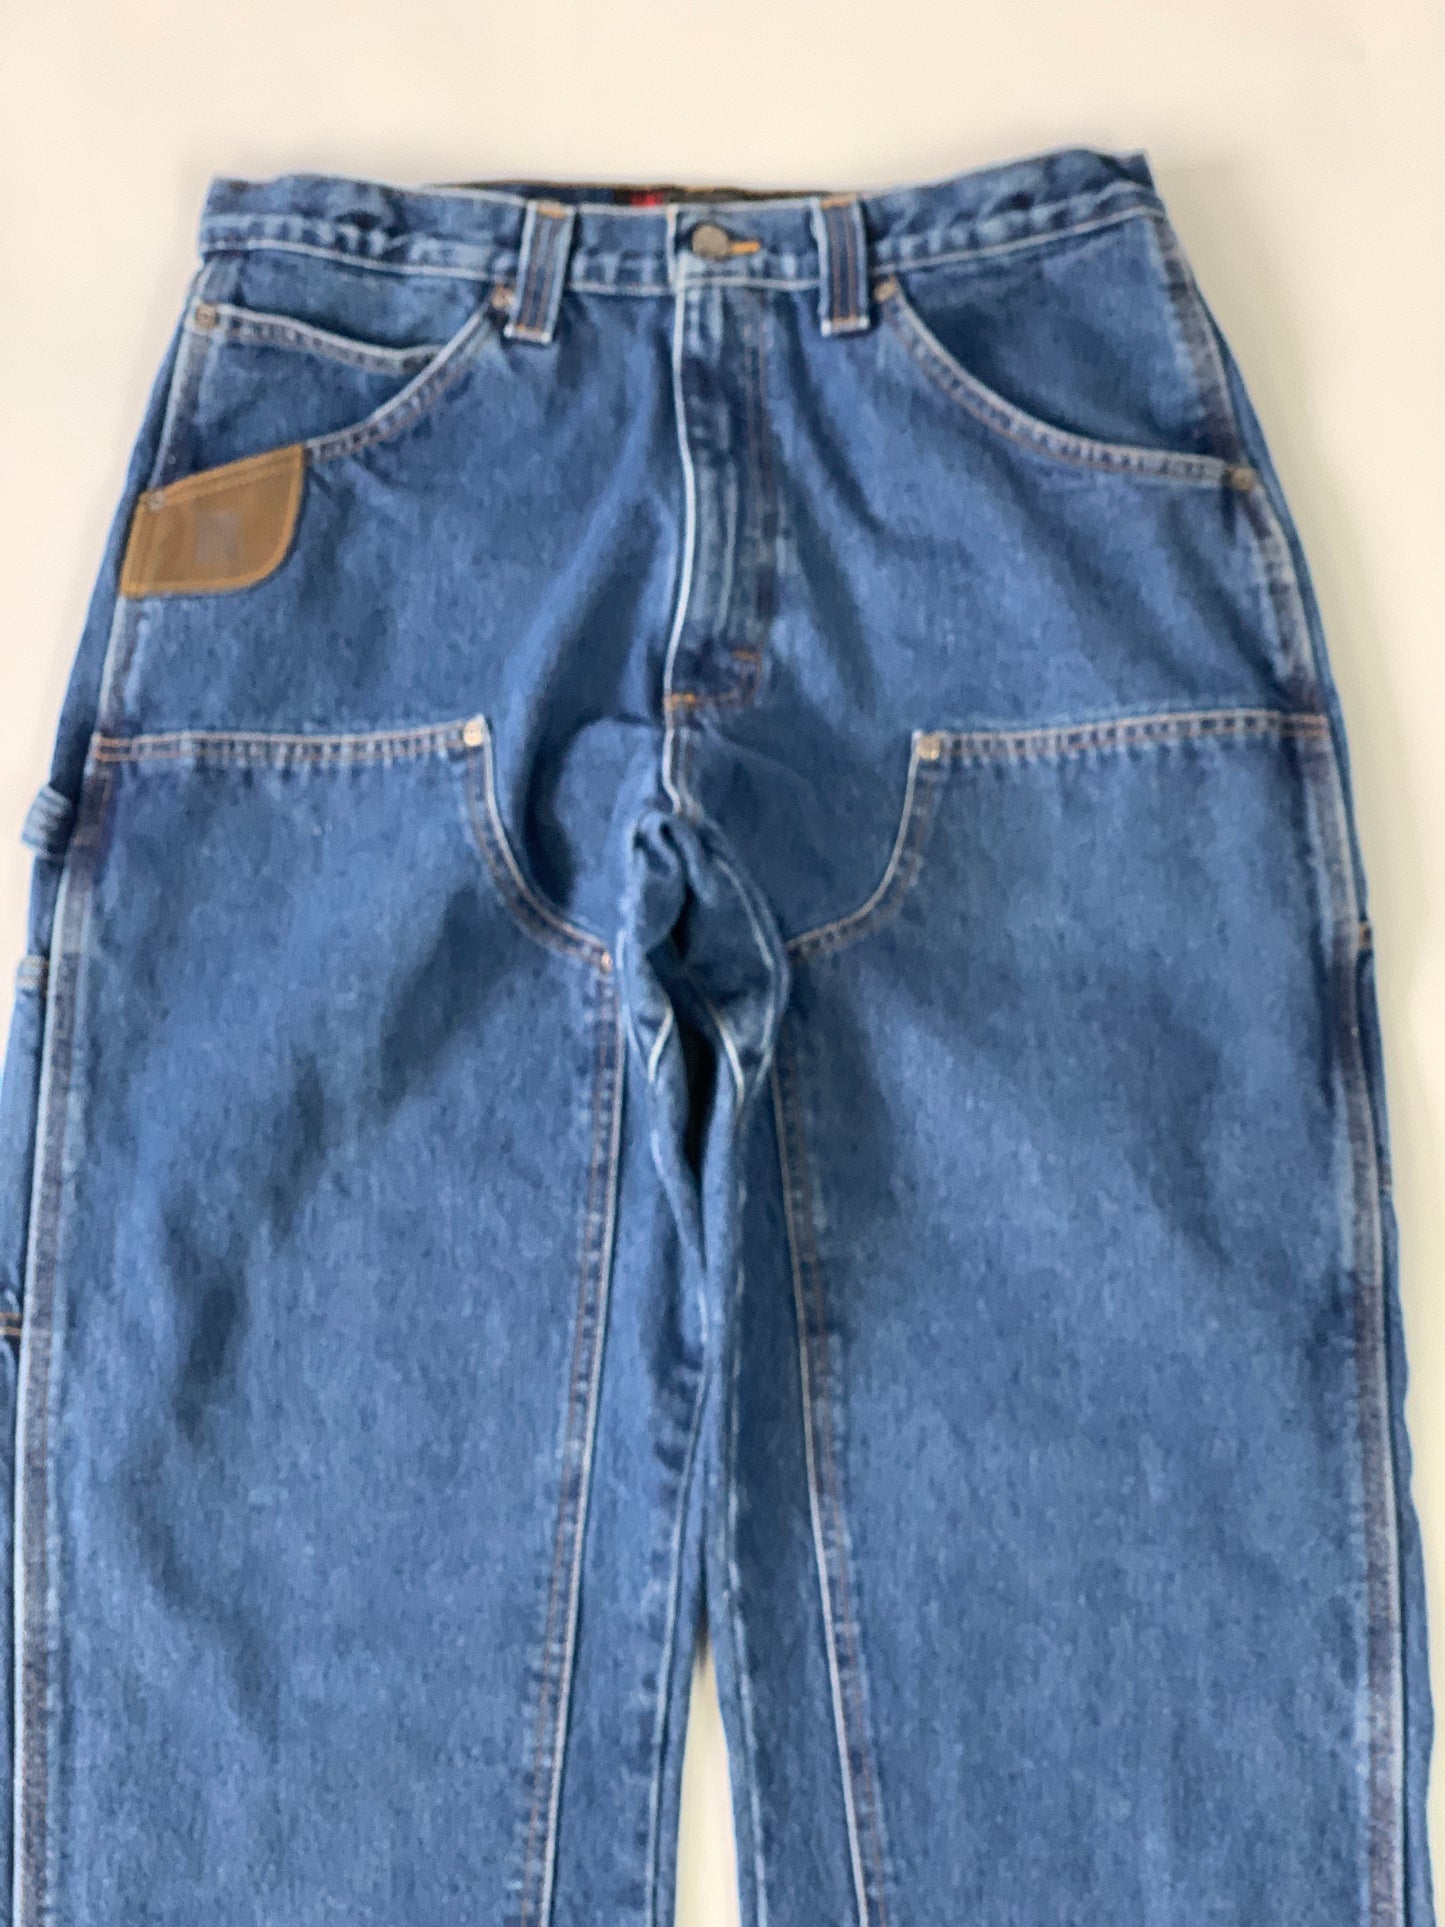 Wrangler Carpenter Double Knee Jeans - 34